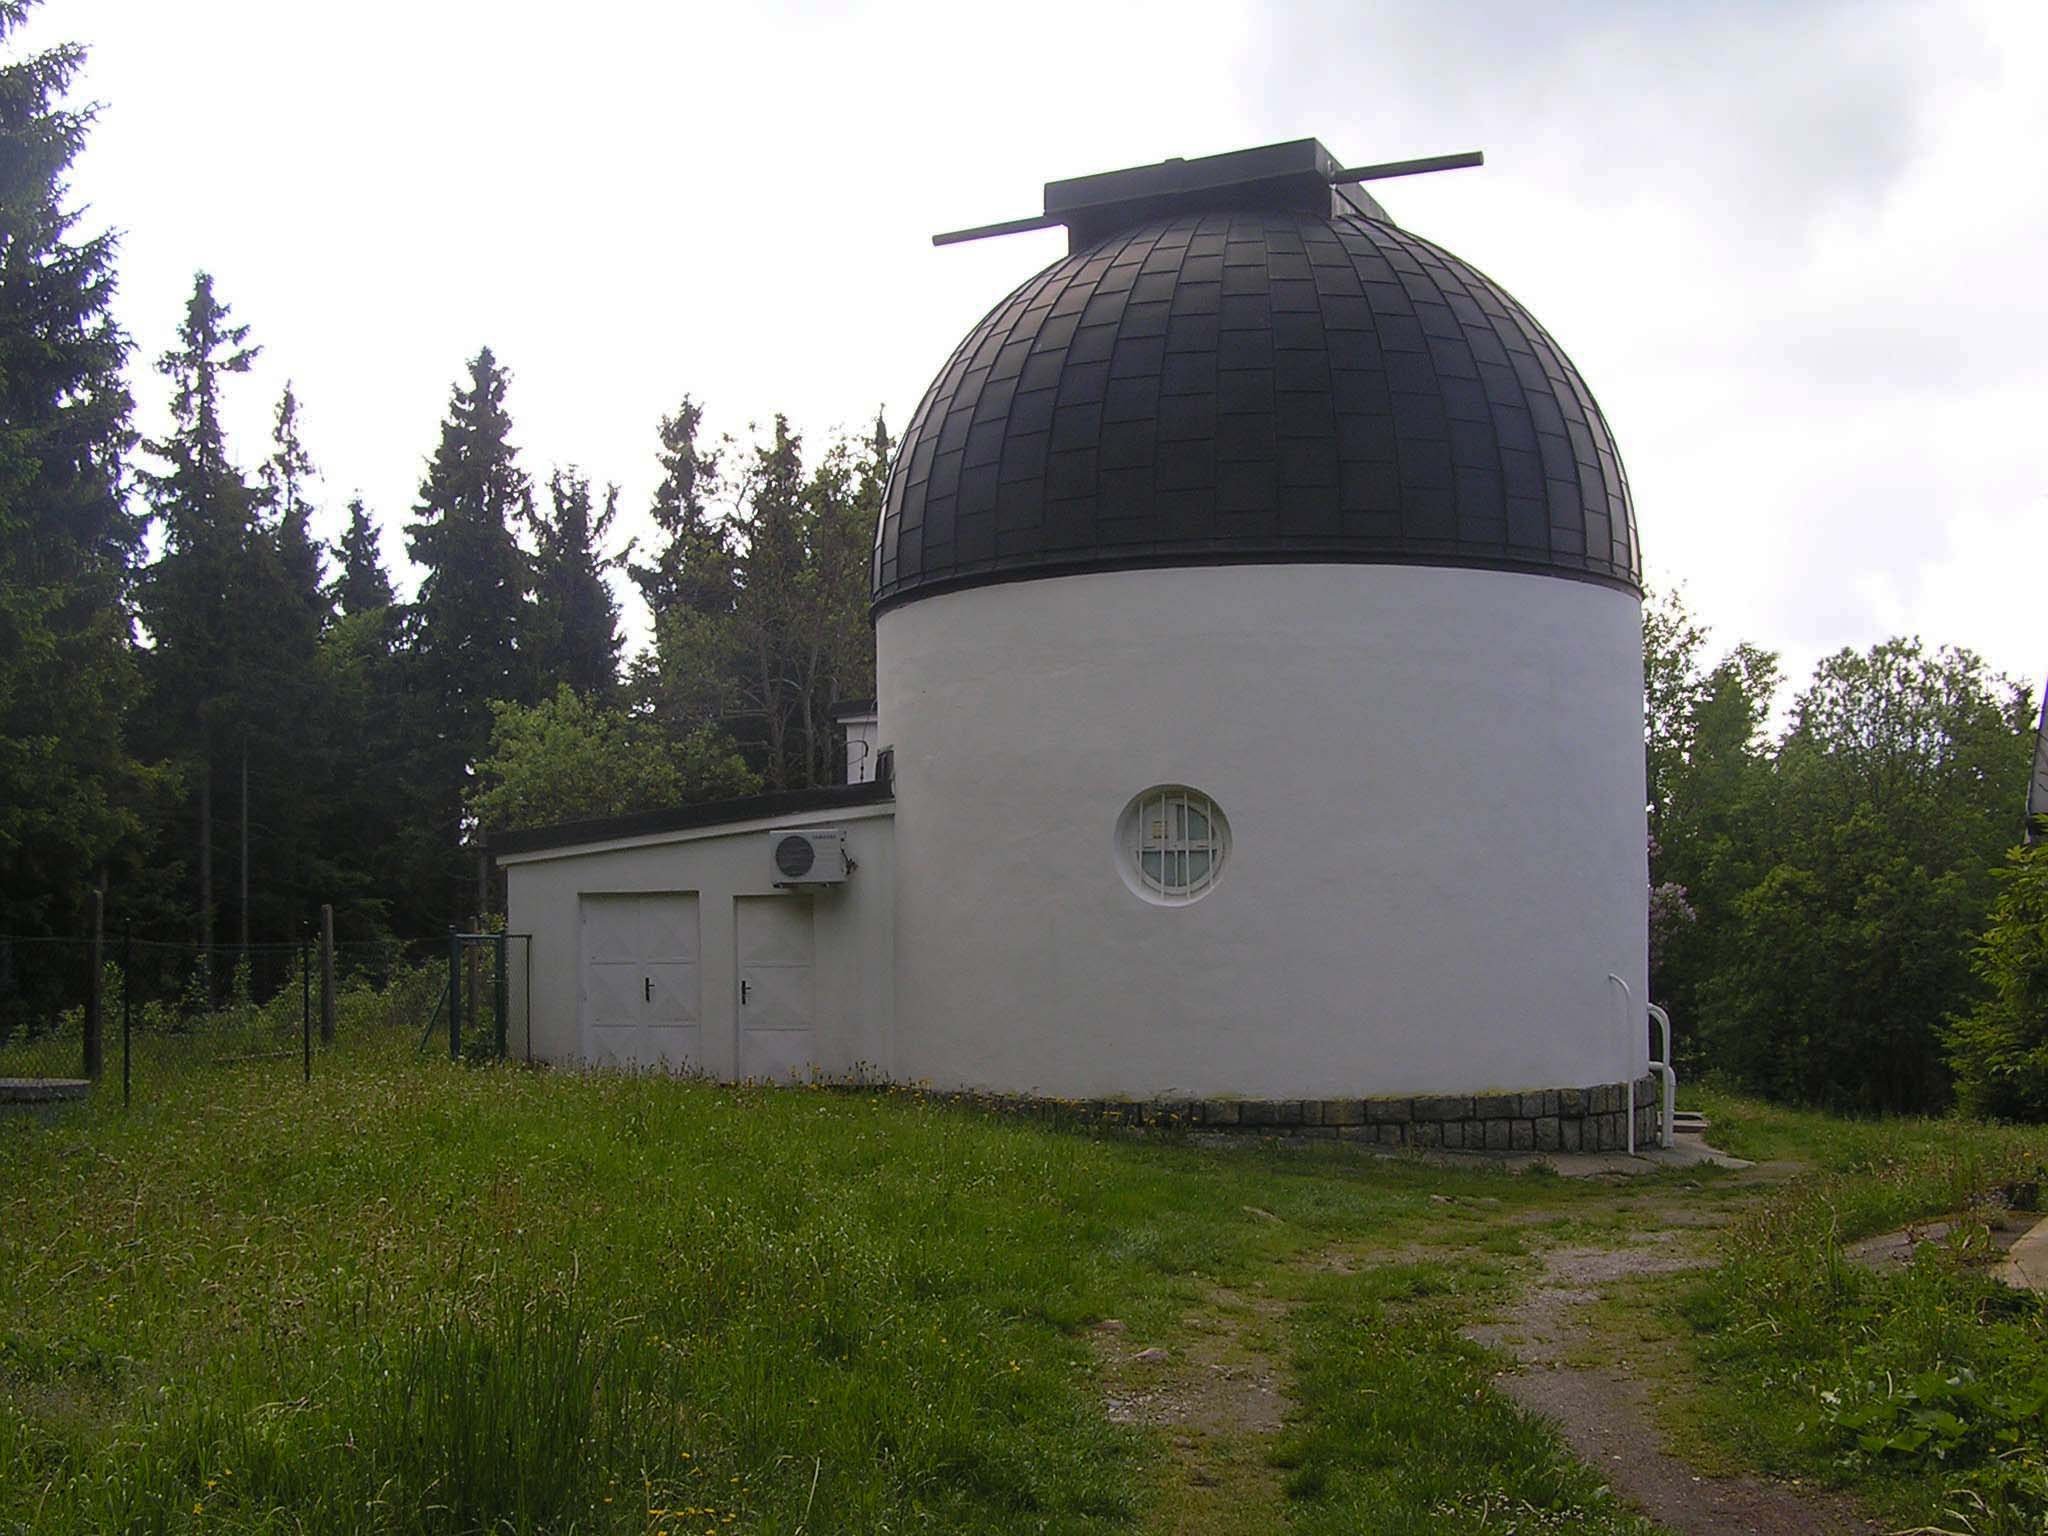 Observatoire de Pilsen